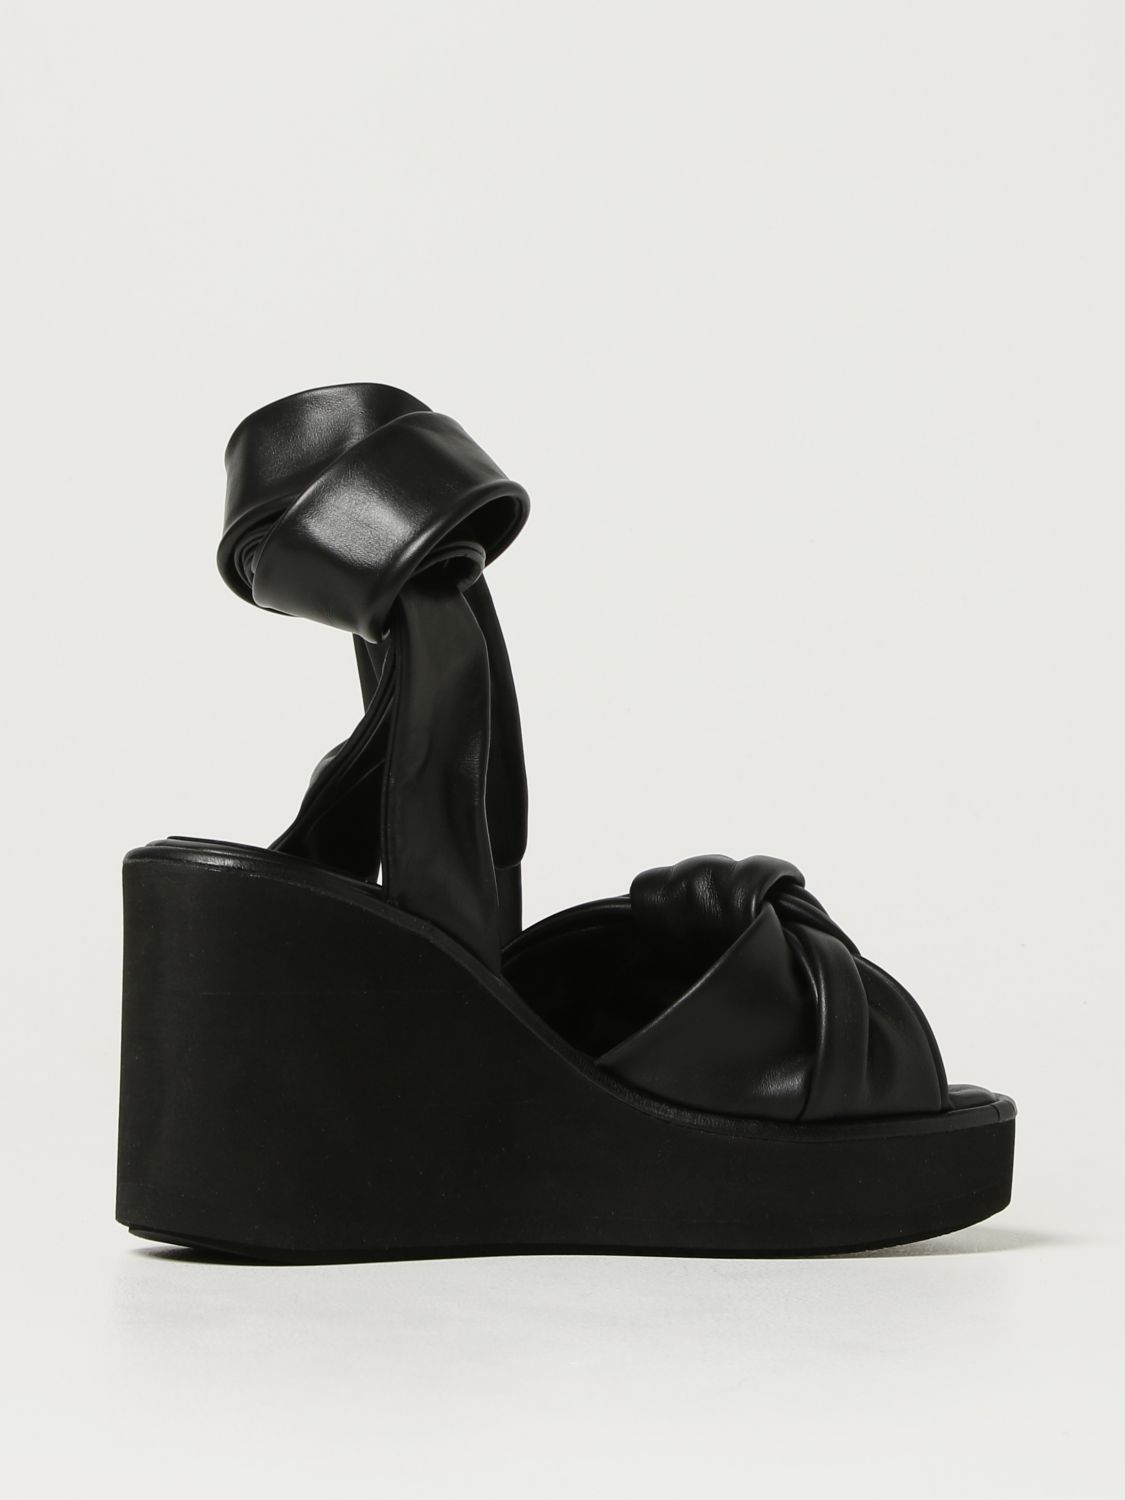 Mujer Zapatos de Tacones de Sandalias con cuña Mao wedges de Paloma Barceló de color Negro 